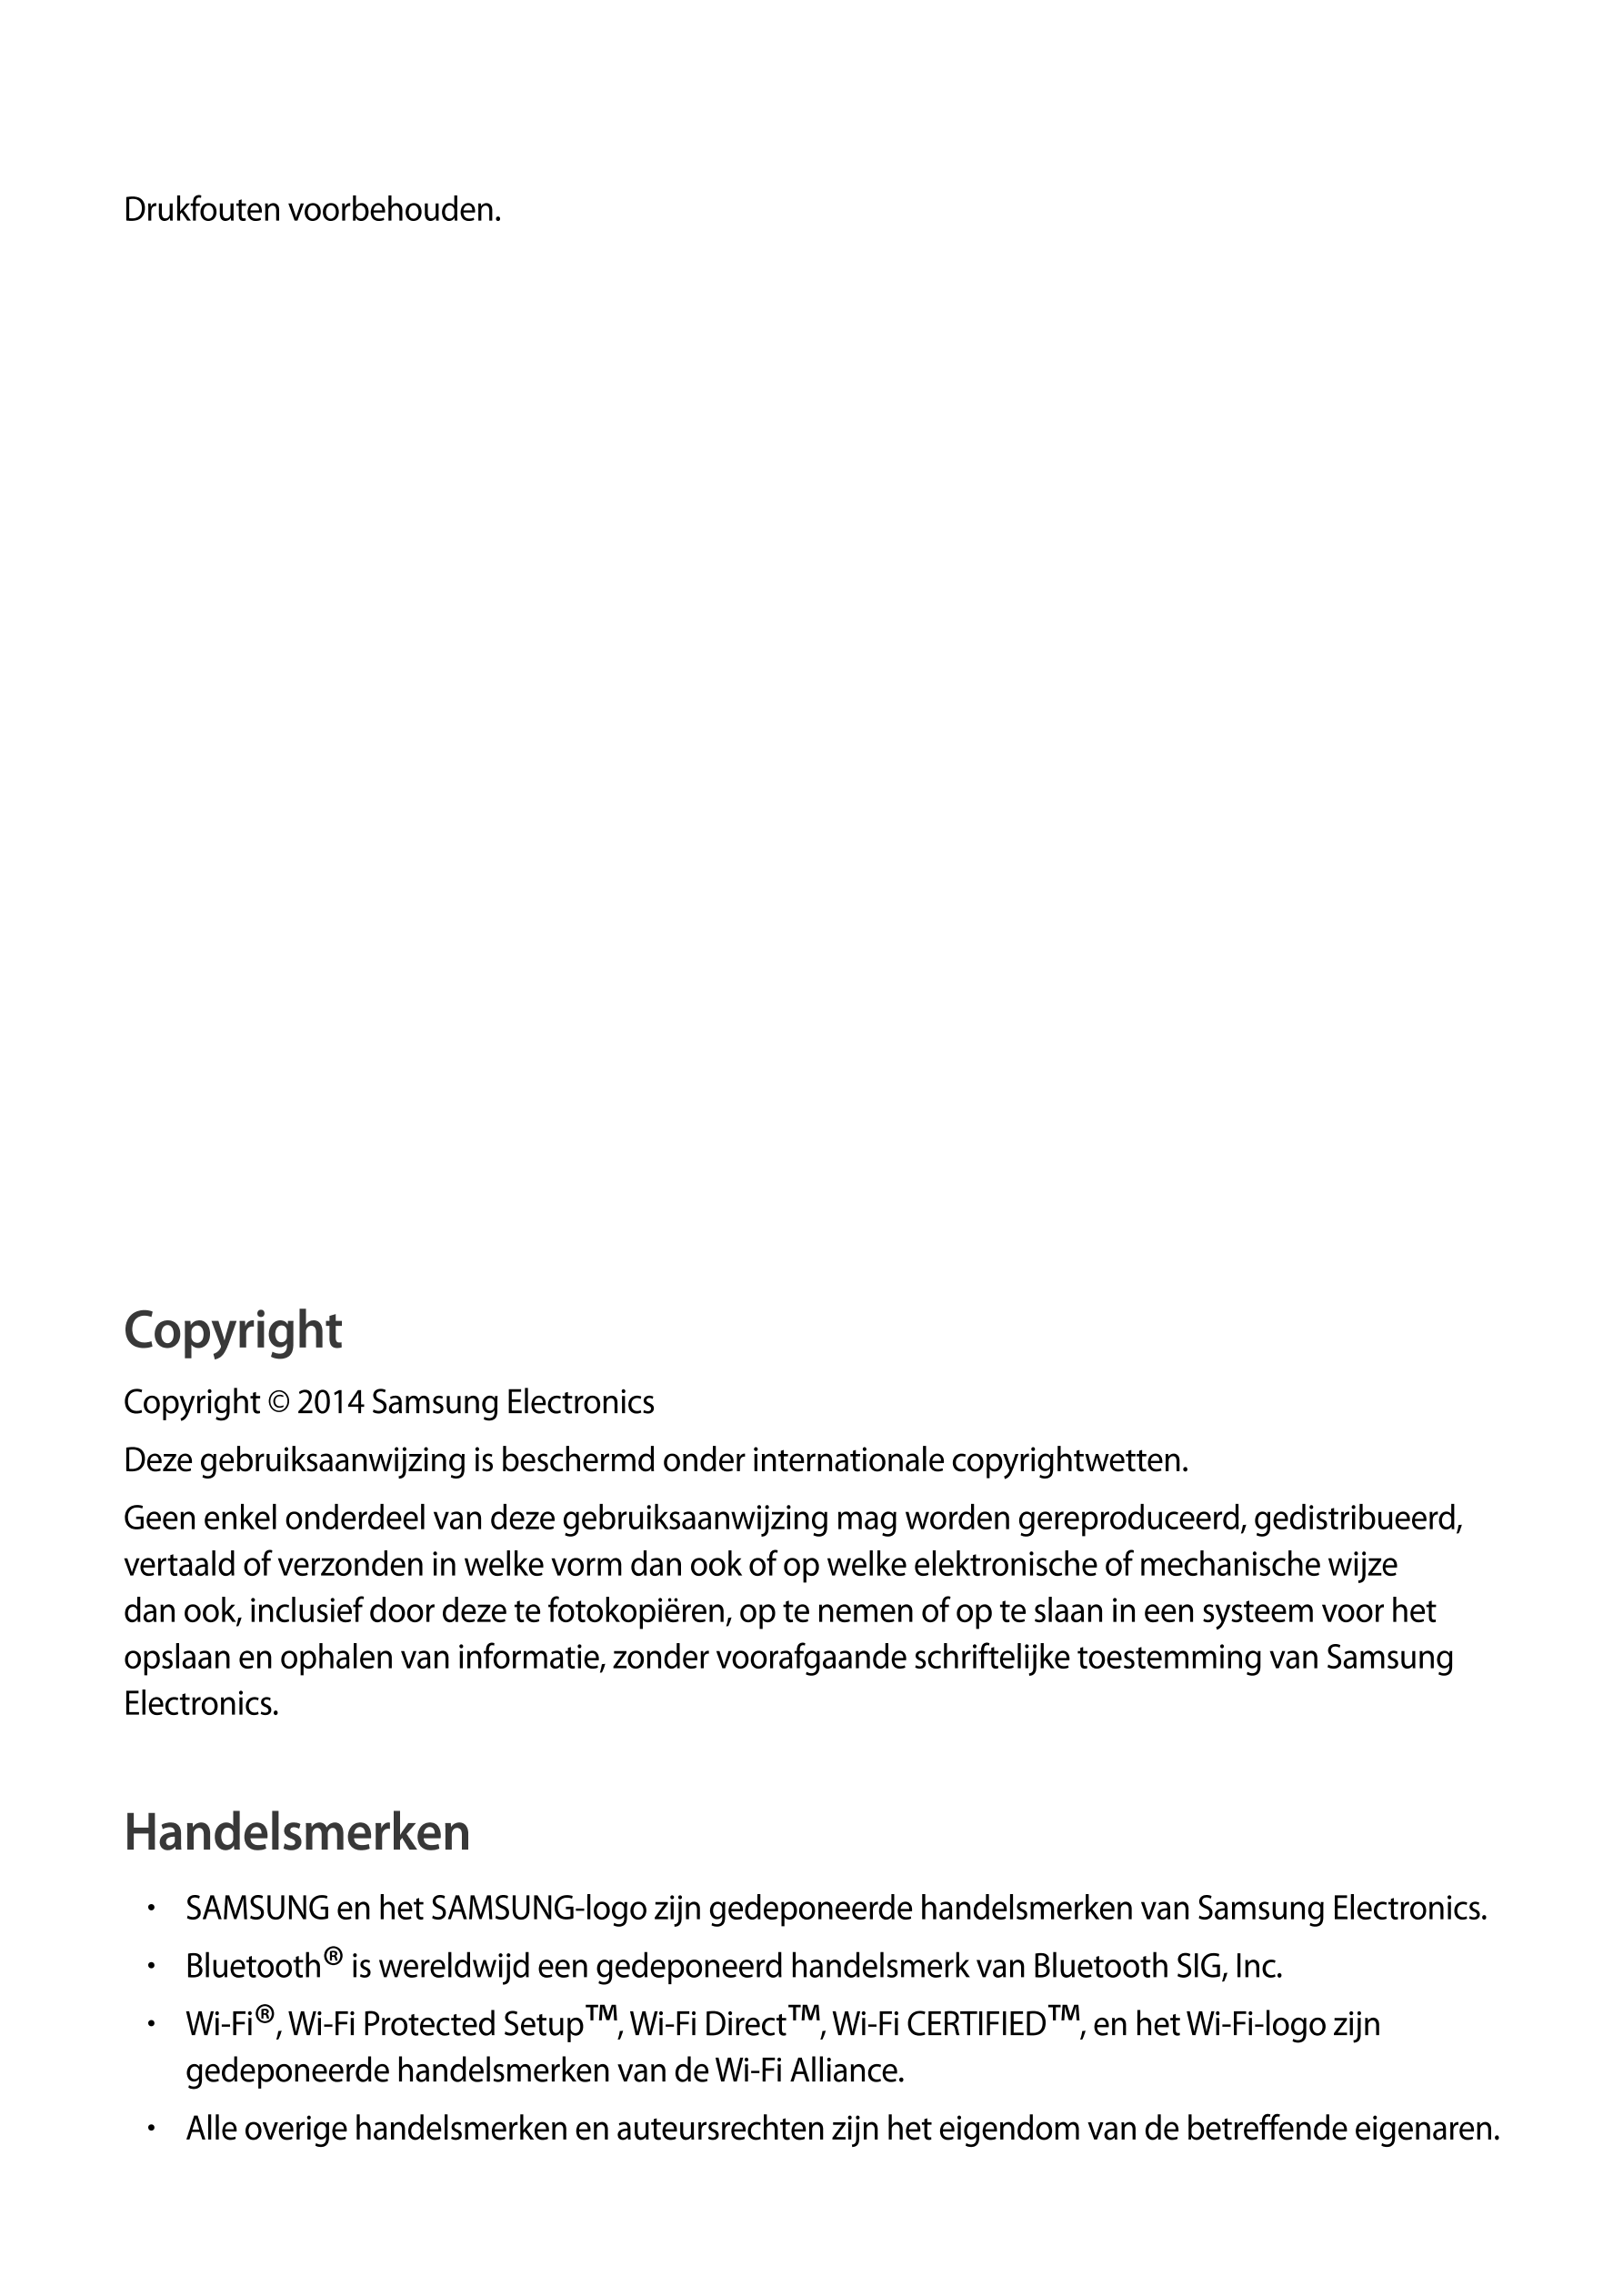 Drukfouten voorbehouden.
Copyright
Copyright © 2014 Samsung Electronics
Deze gebruiksaanwijzing is beschermd onder international